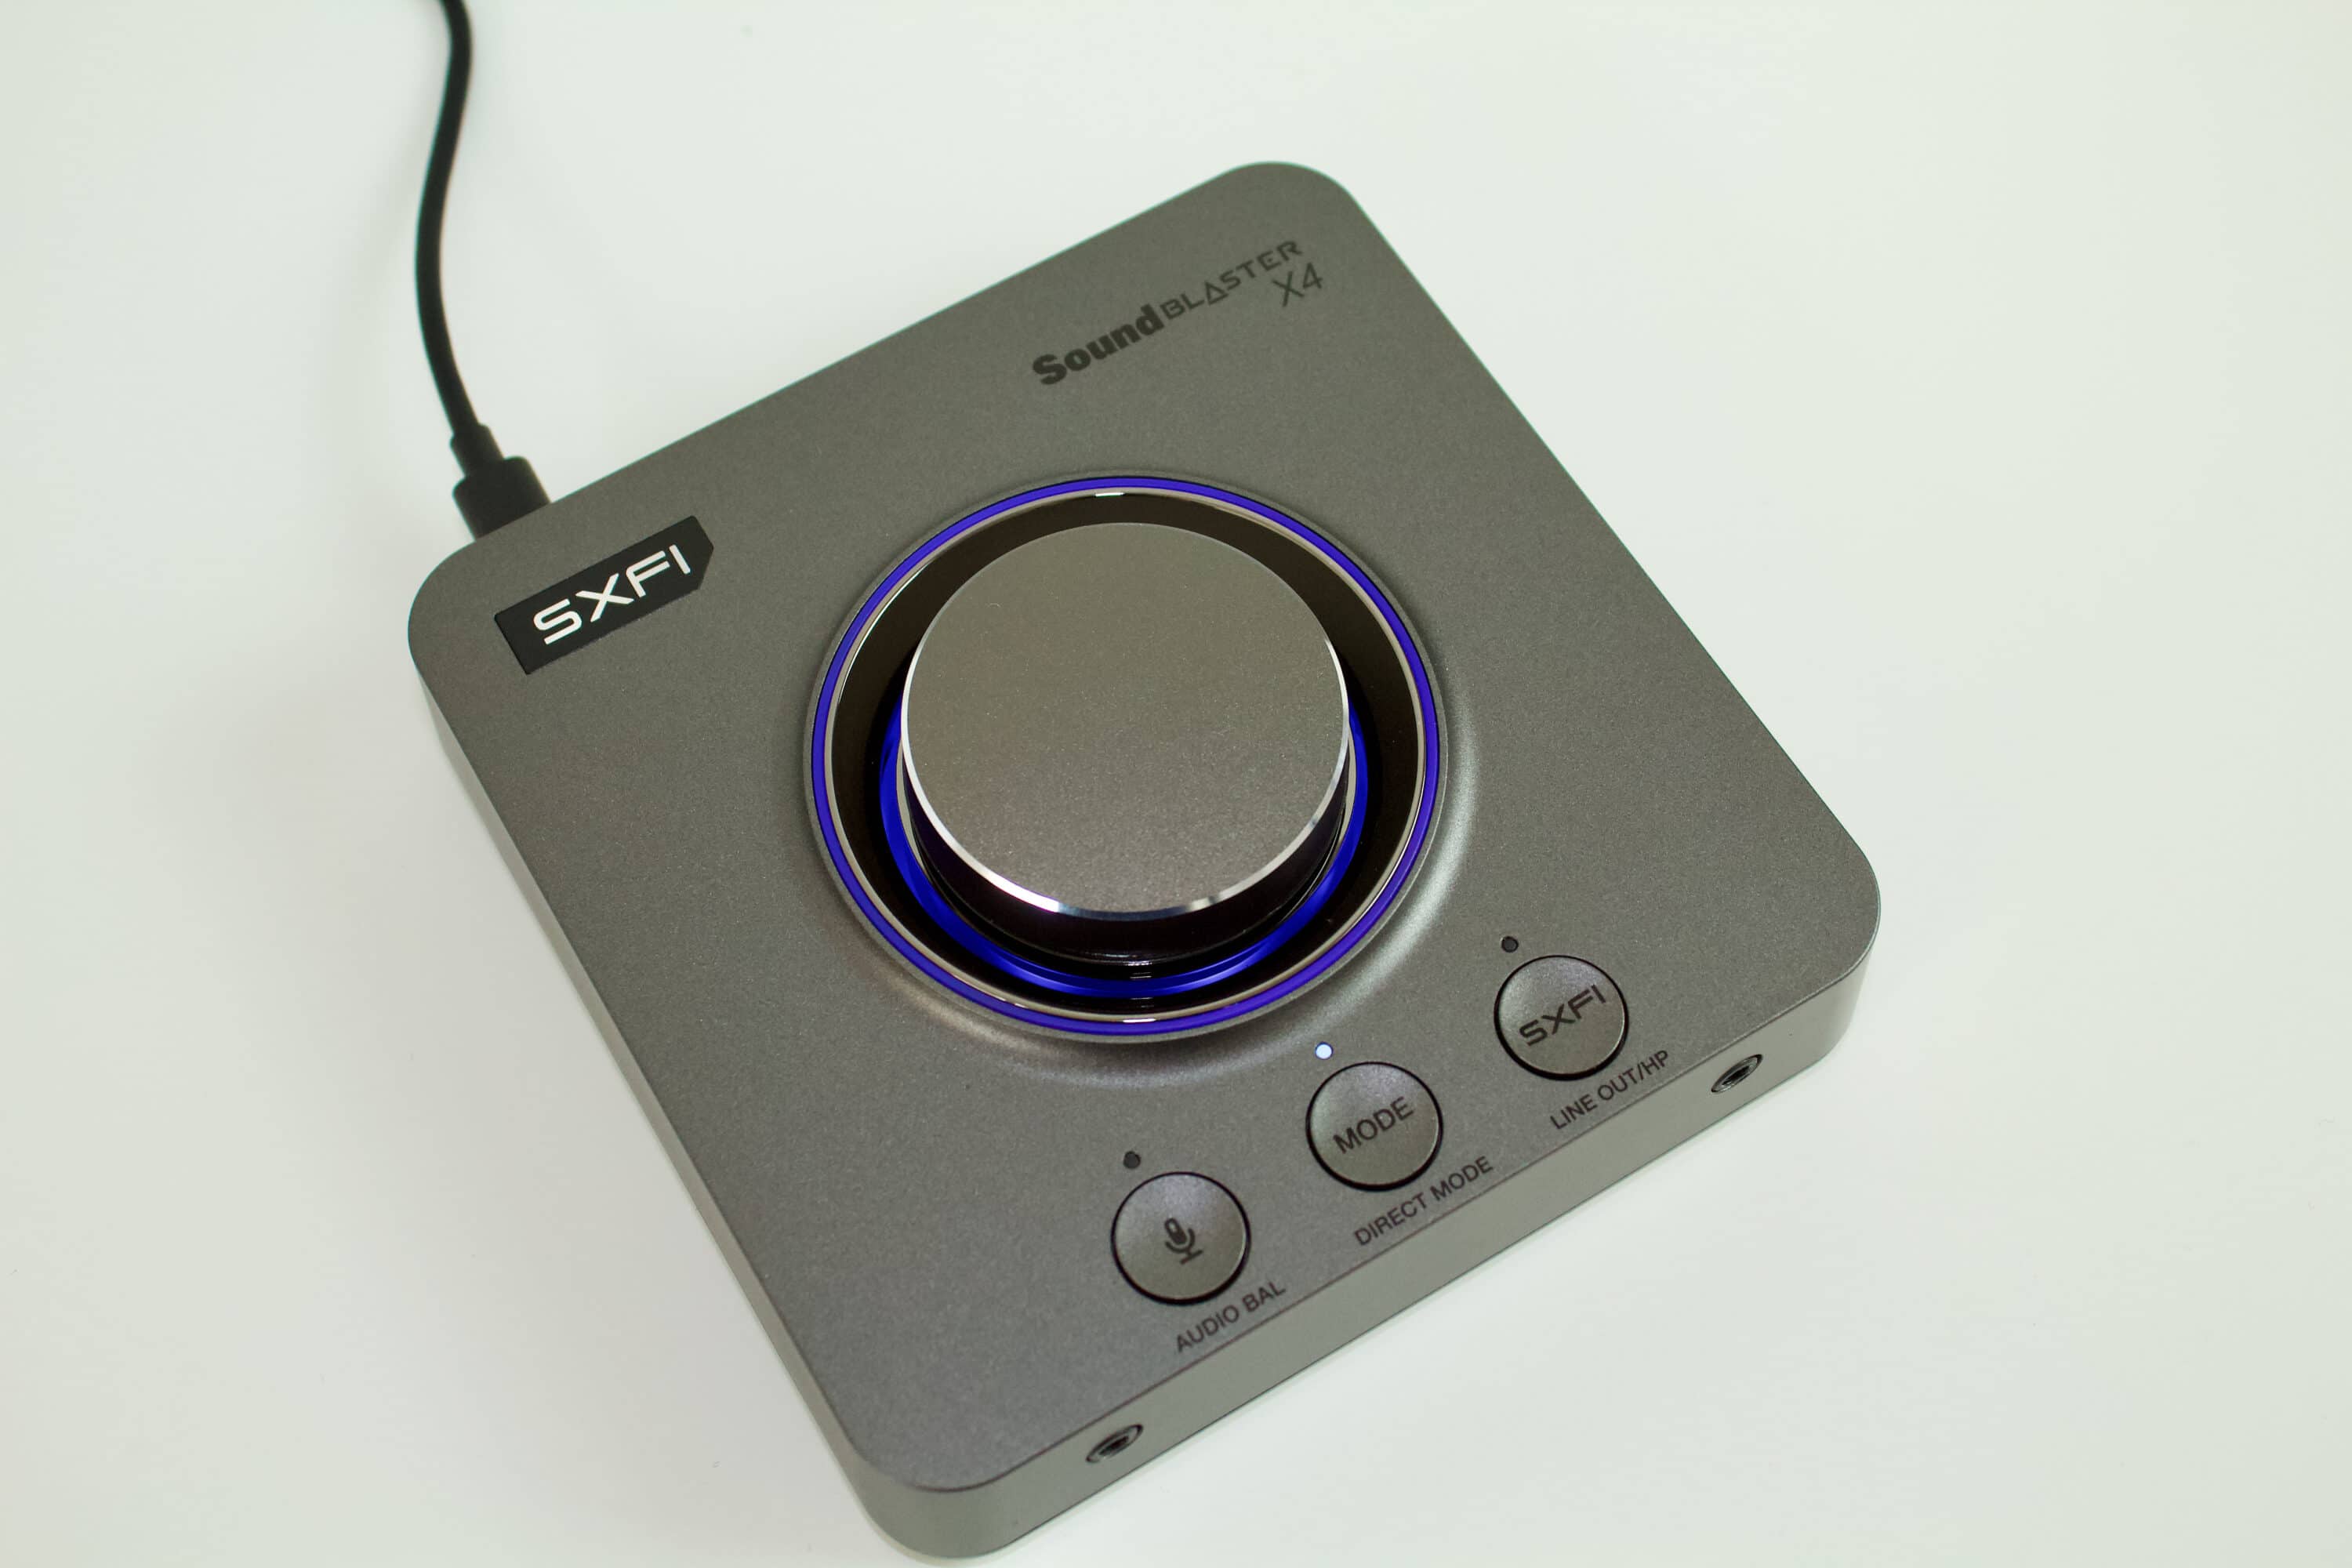 Sound Blaster X4 光デジタル入力 オーディオ バランス機能 マルチ